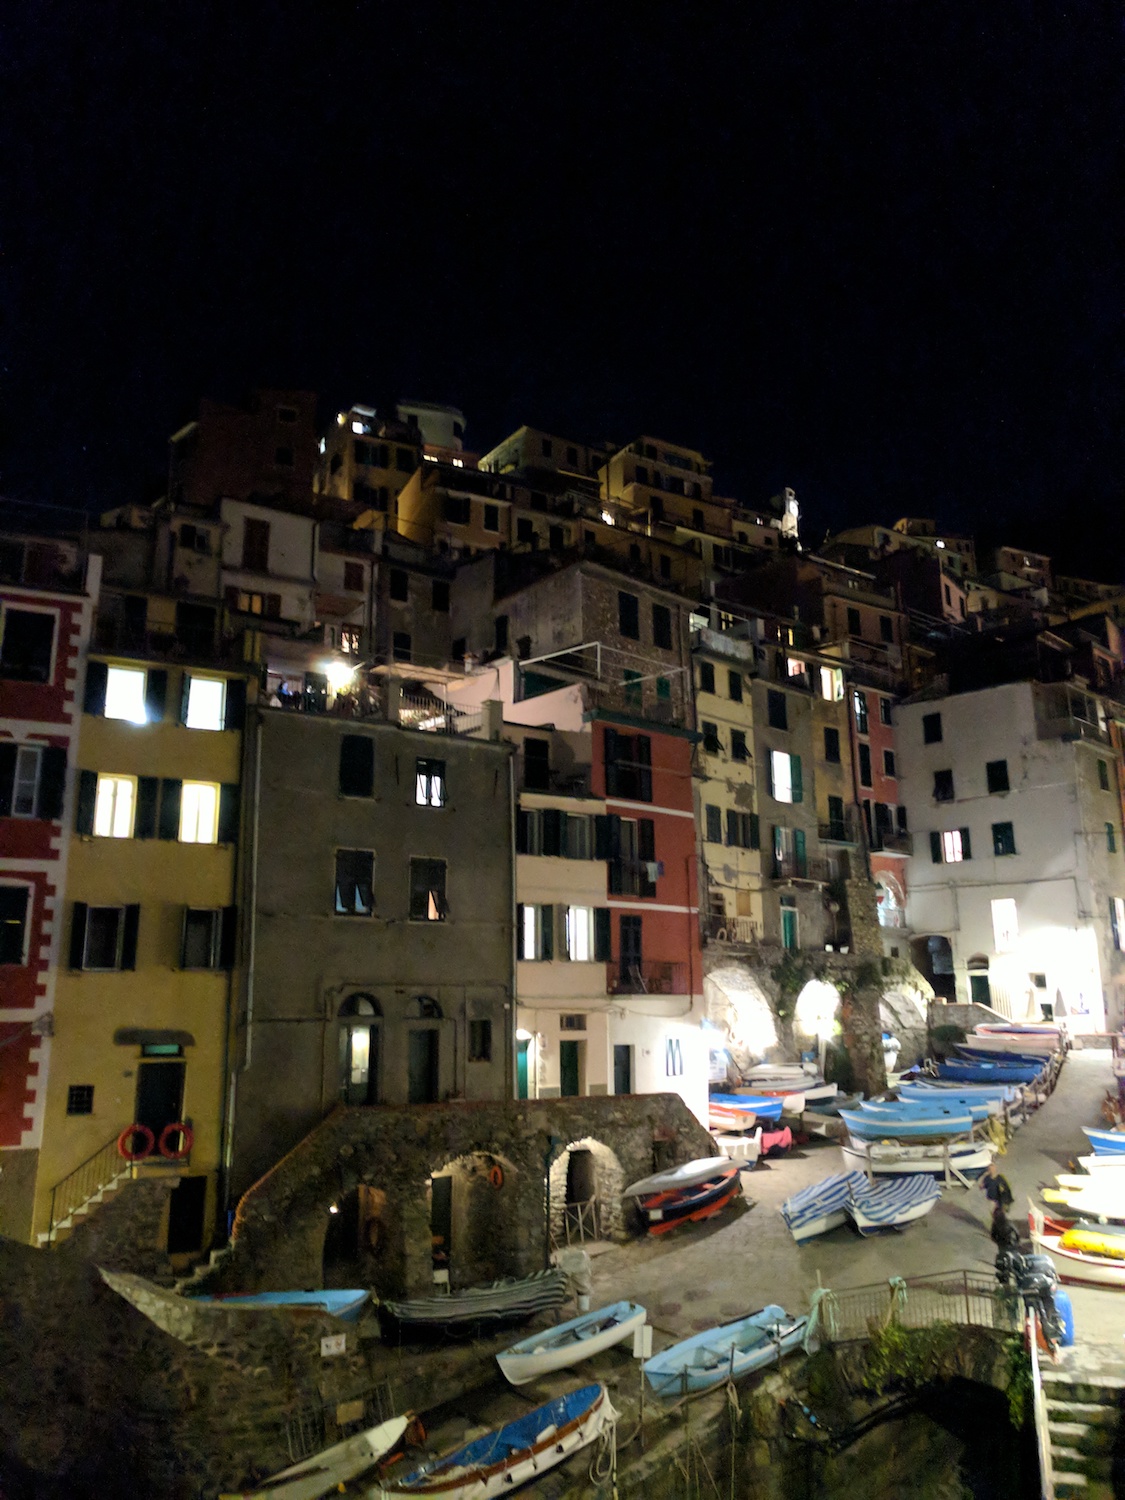  A night in Riomaggiore (Cinque Terre) 